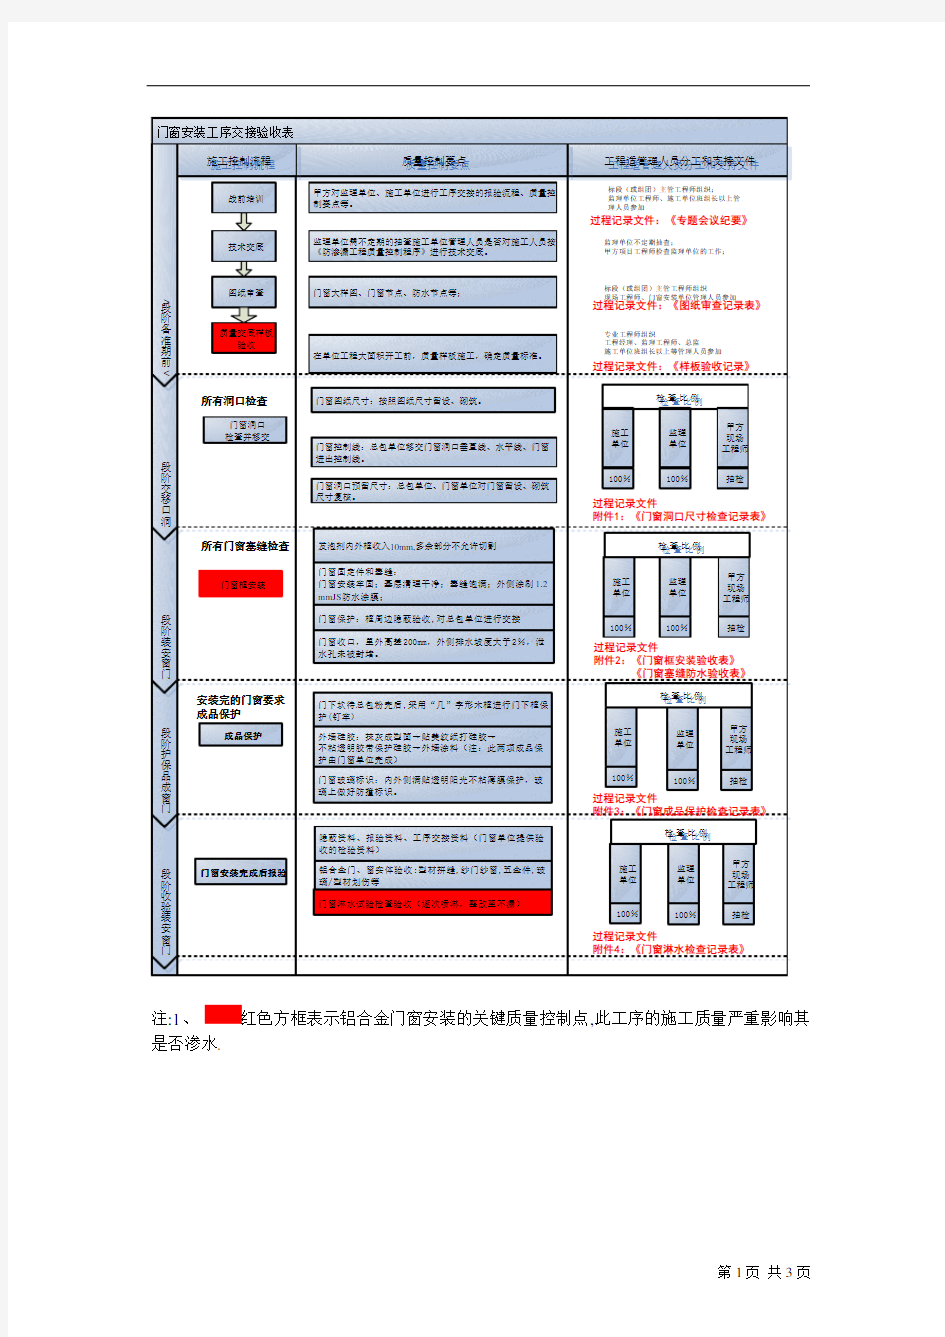 防渗漏工程质量控制程序(上海)[详细]